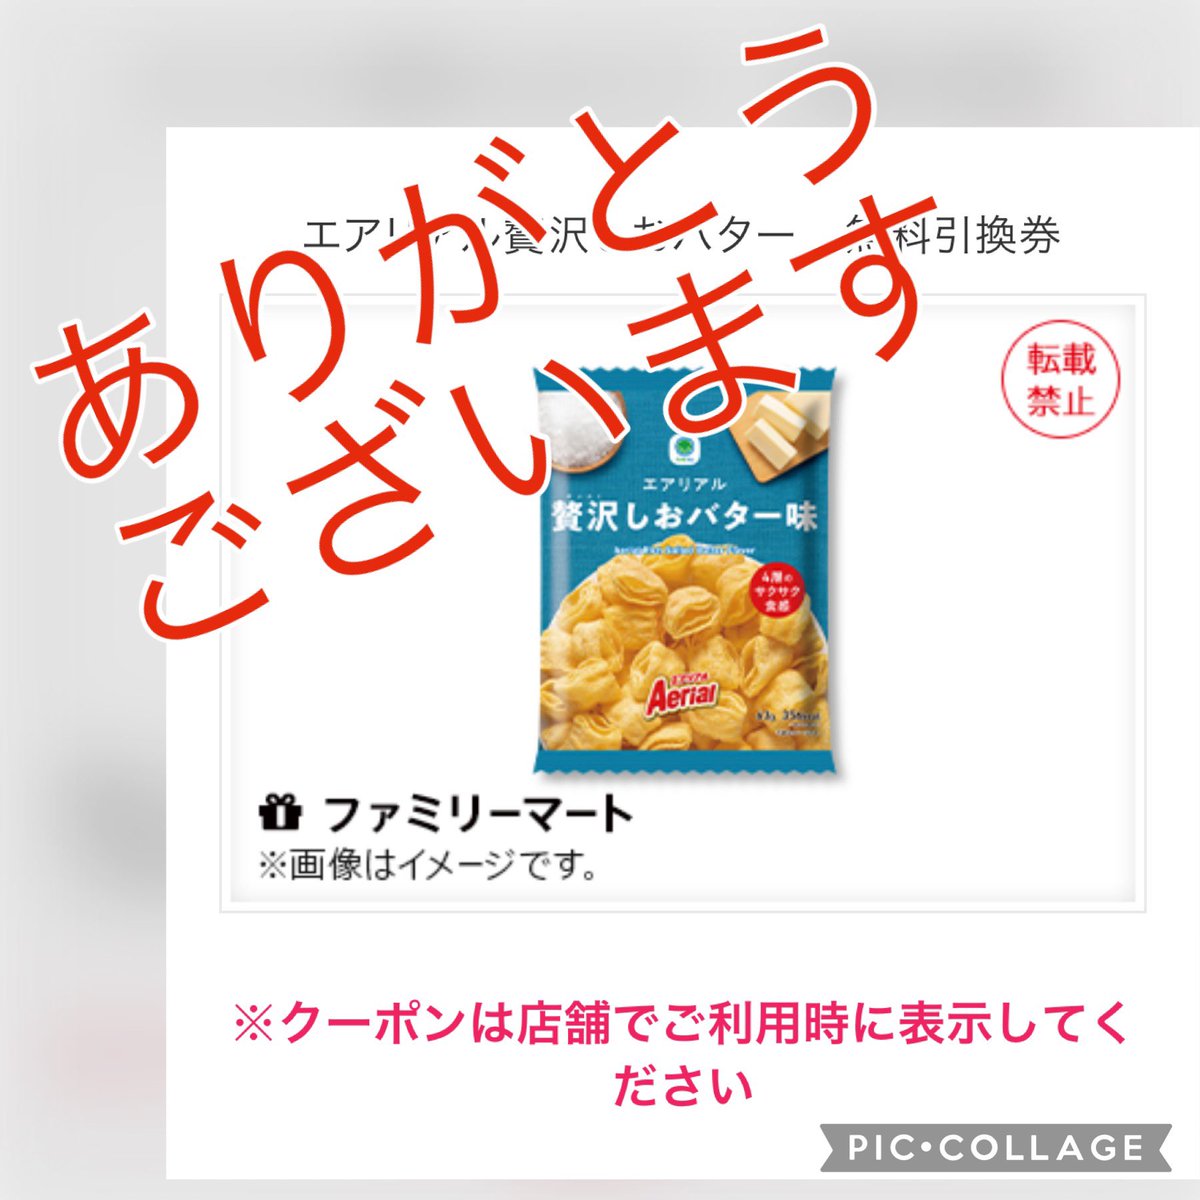 Netflix Japan | ネットフリックス
@NetflixJP

「ゴールデデーンクイズ」に当選して、「エアリアル贅沢しおバター味　無料引換クーポン」を頂きました。
ネットフリックス見ながら食べます！
当選させて頂き、ありがとうございました！